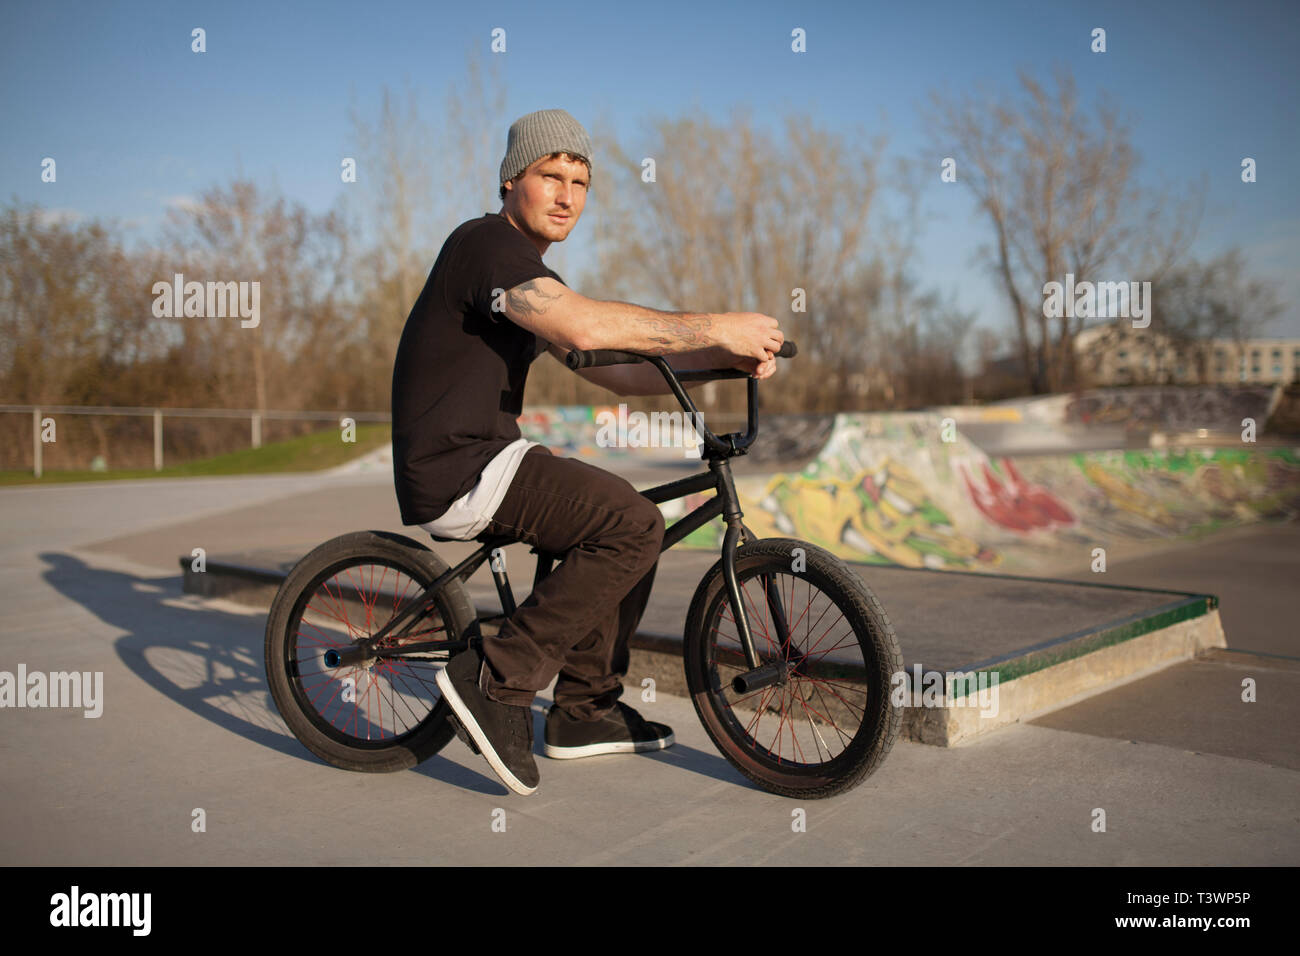 Caucasian man riding BMX bicycle at skate park Stock Photo - Alamy